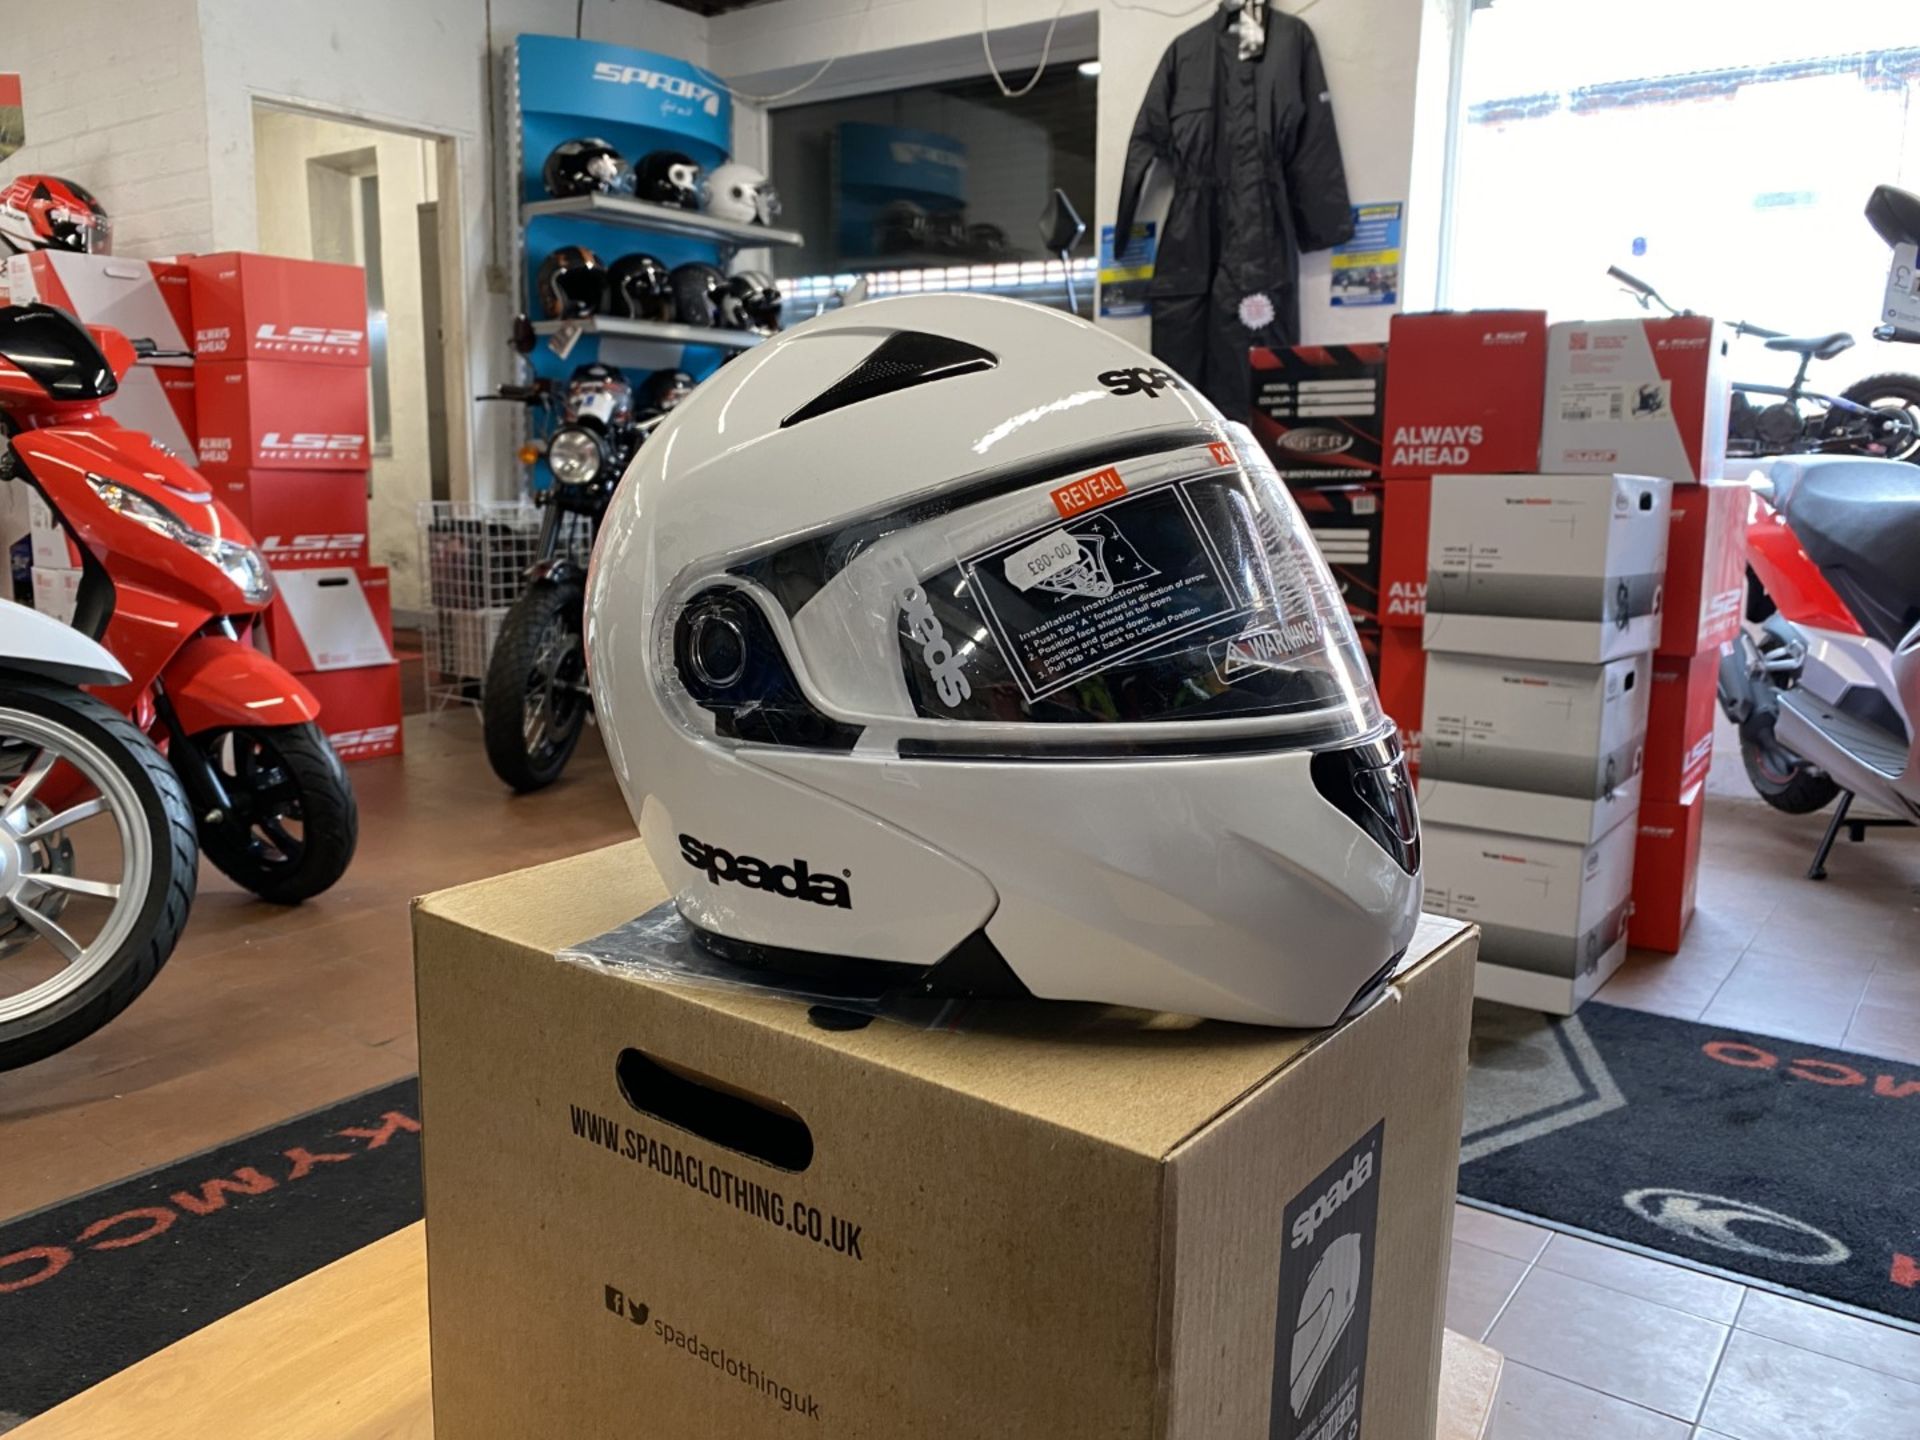 Spada Reveal White X-Large Helmet - Moto Headwear - Motorcycle / Motorbike Helmet - RRP £80.00 - Image 3 of 5